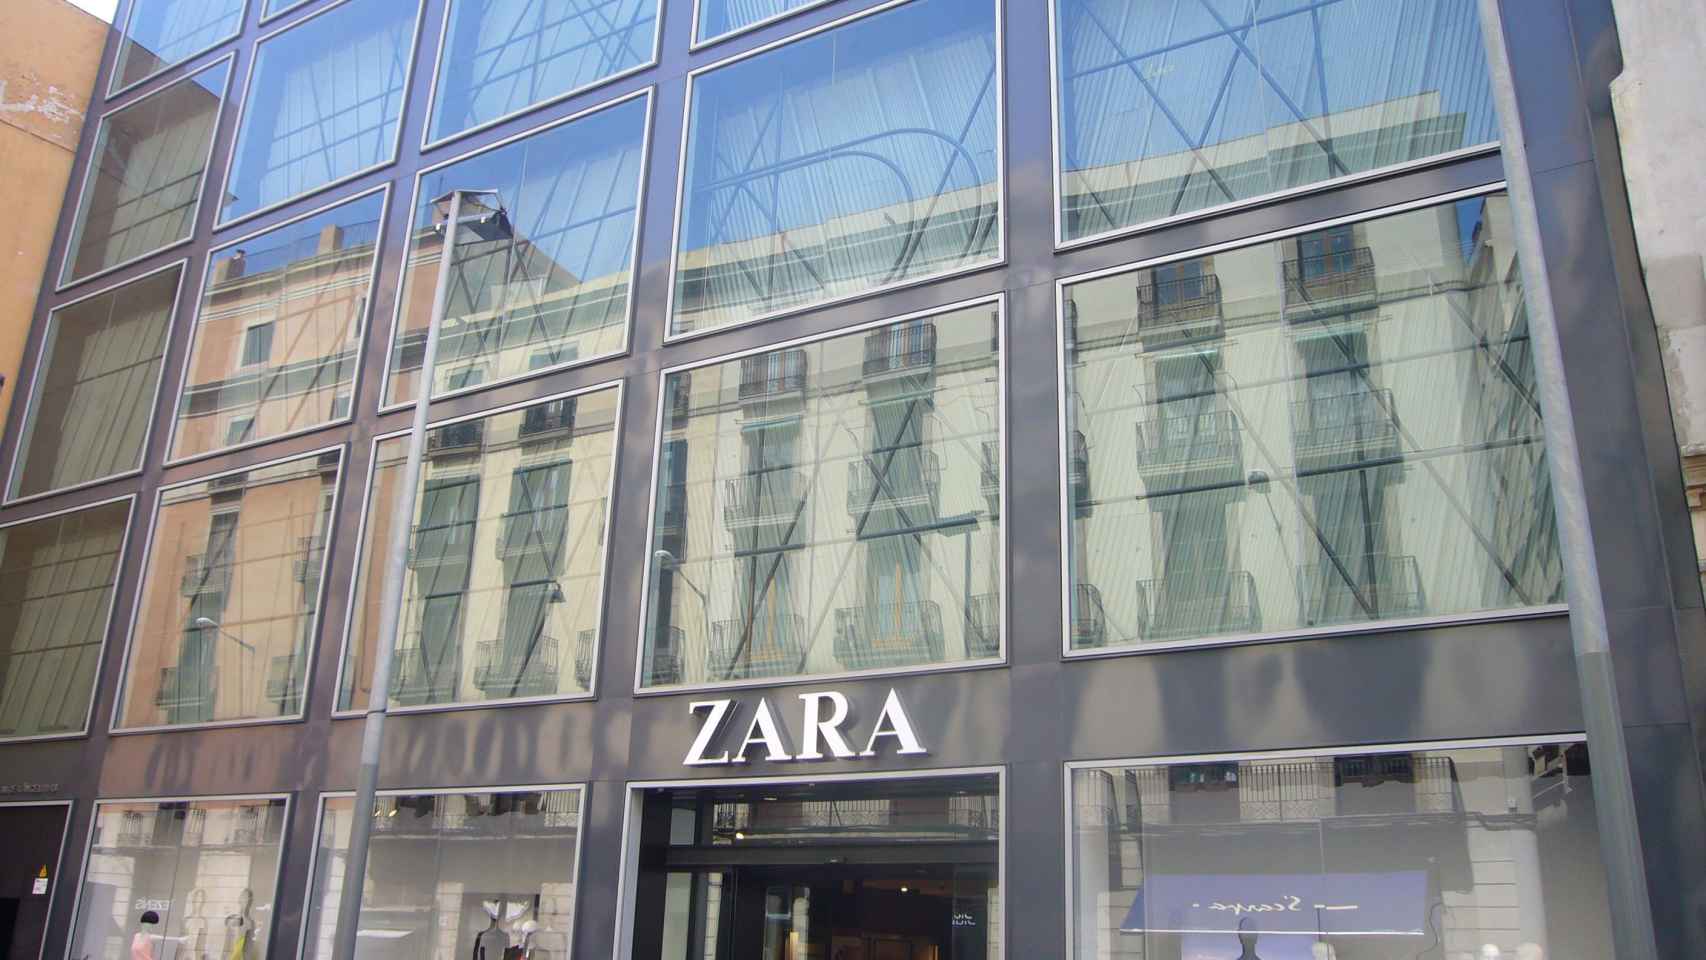 Establecimiento de la tienda Zara ubicado en el Portal de l'Àngel de Barcelona